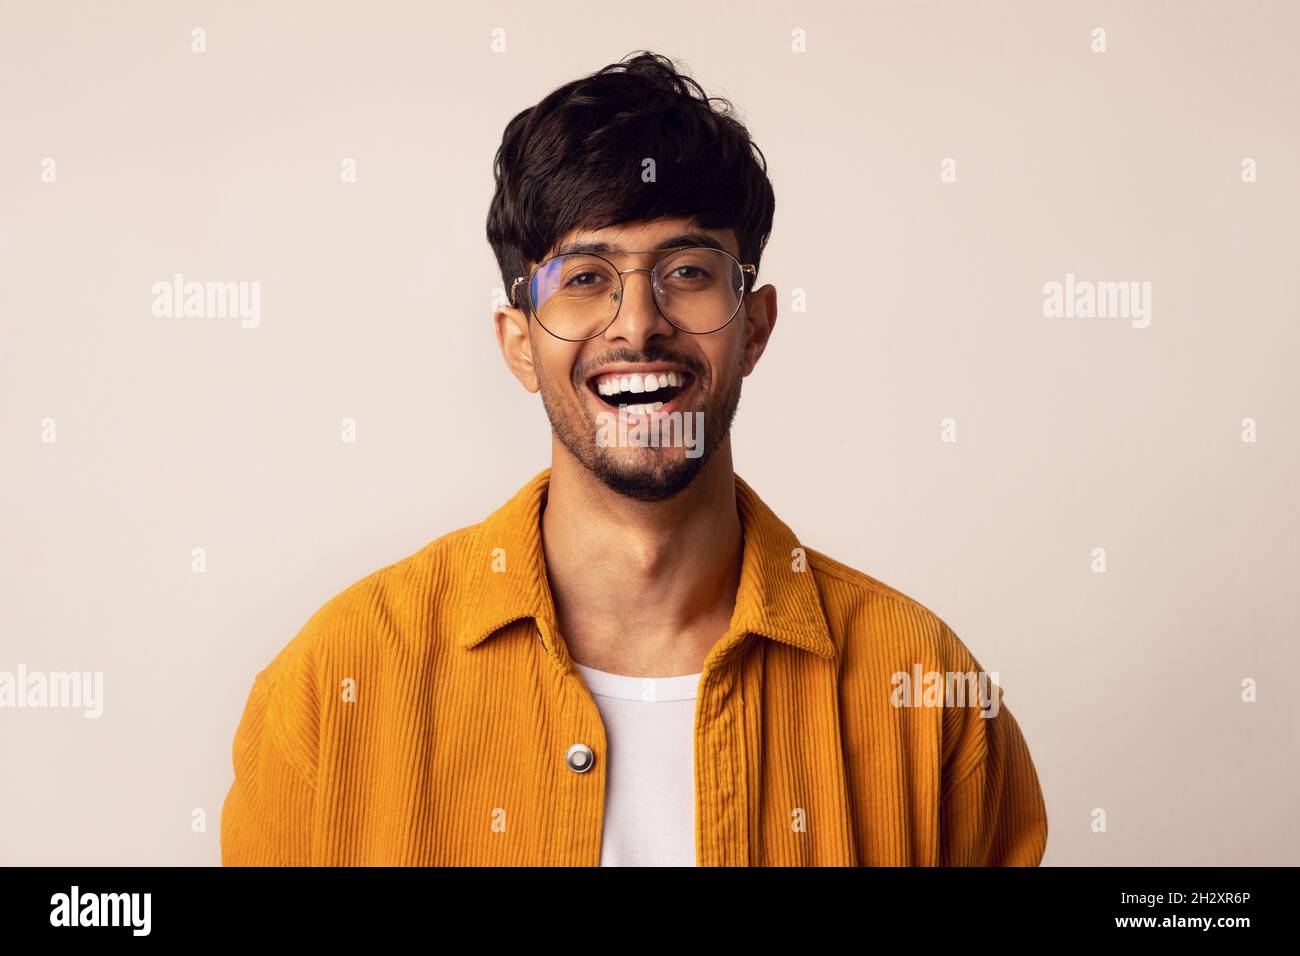 Nahaufnahme des glücklichen arabischen Mannes, der vor der Kamera lächelt Stockfoto